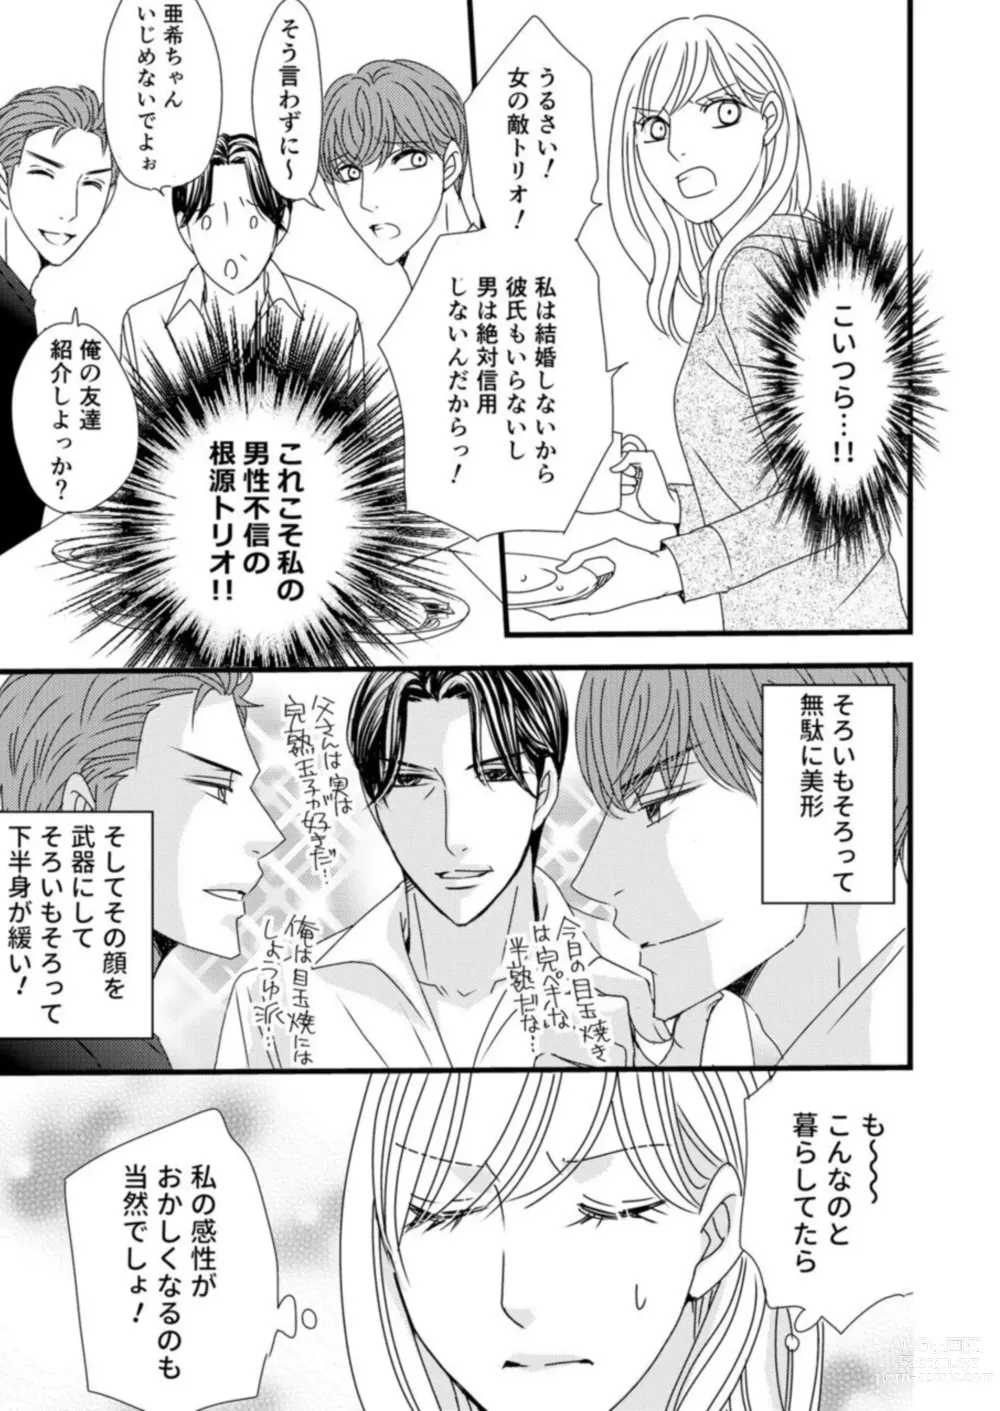 Page 11 of manga Takane no koi wa Mendokusai 1